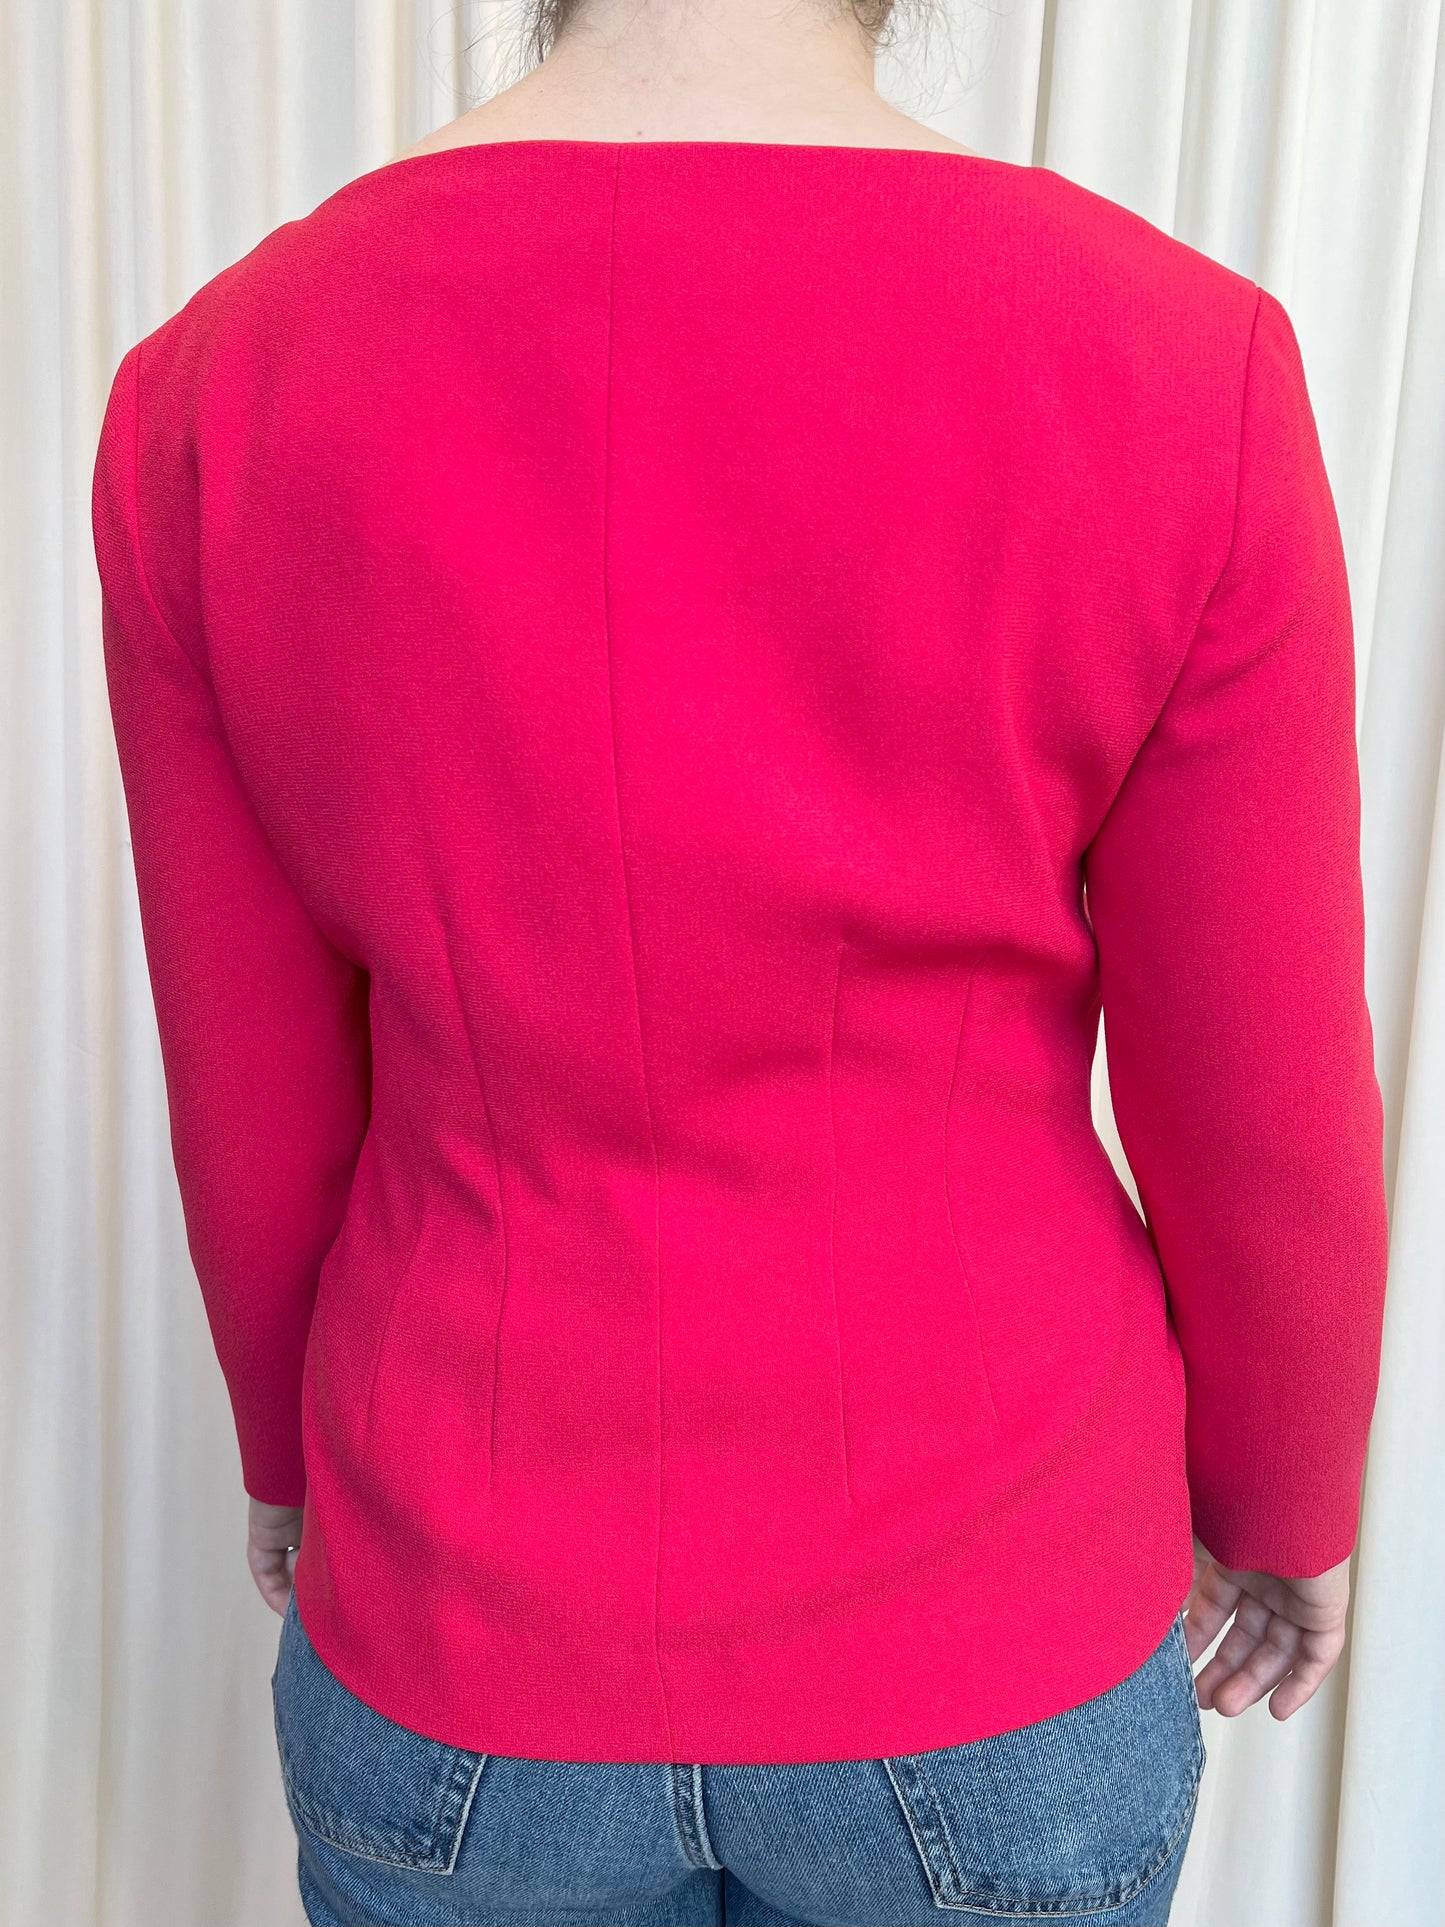 Vintage Hot Pink Jacket - 4